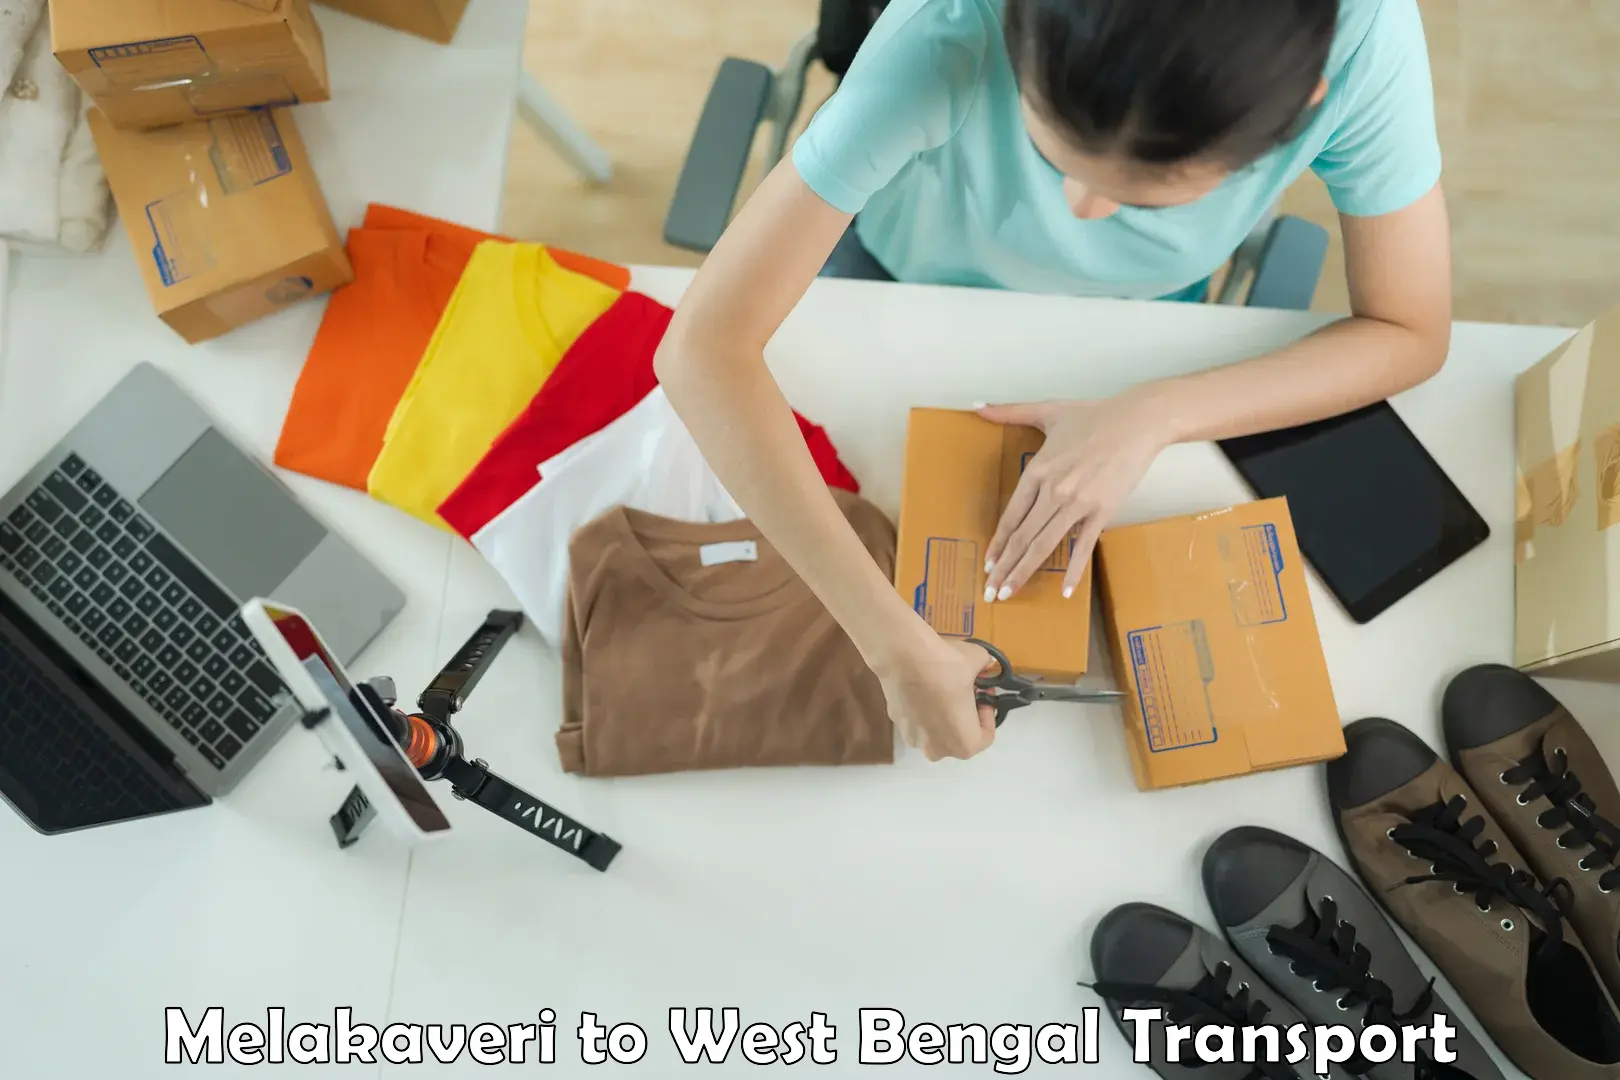 Furniture transport service Melakaveri to Baneswar